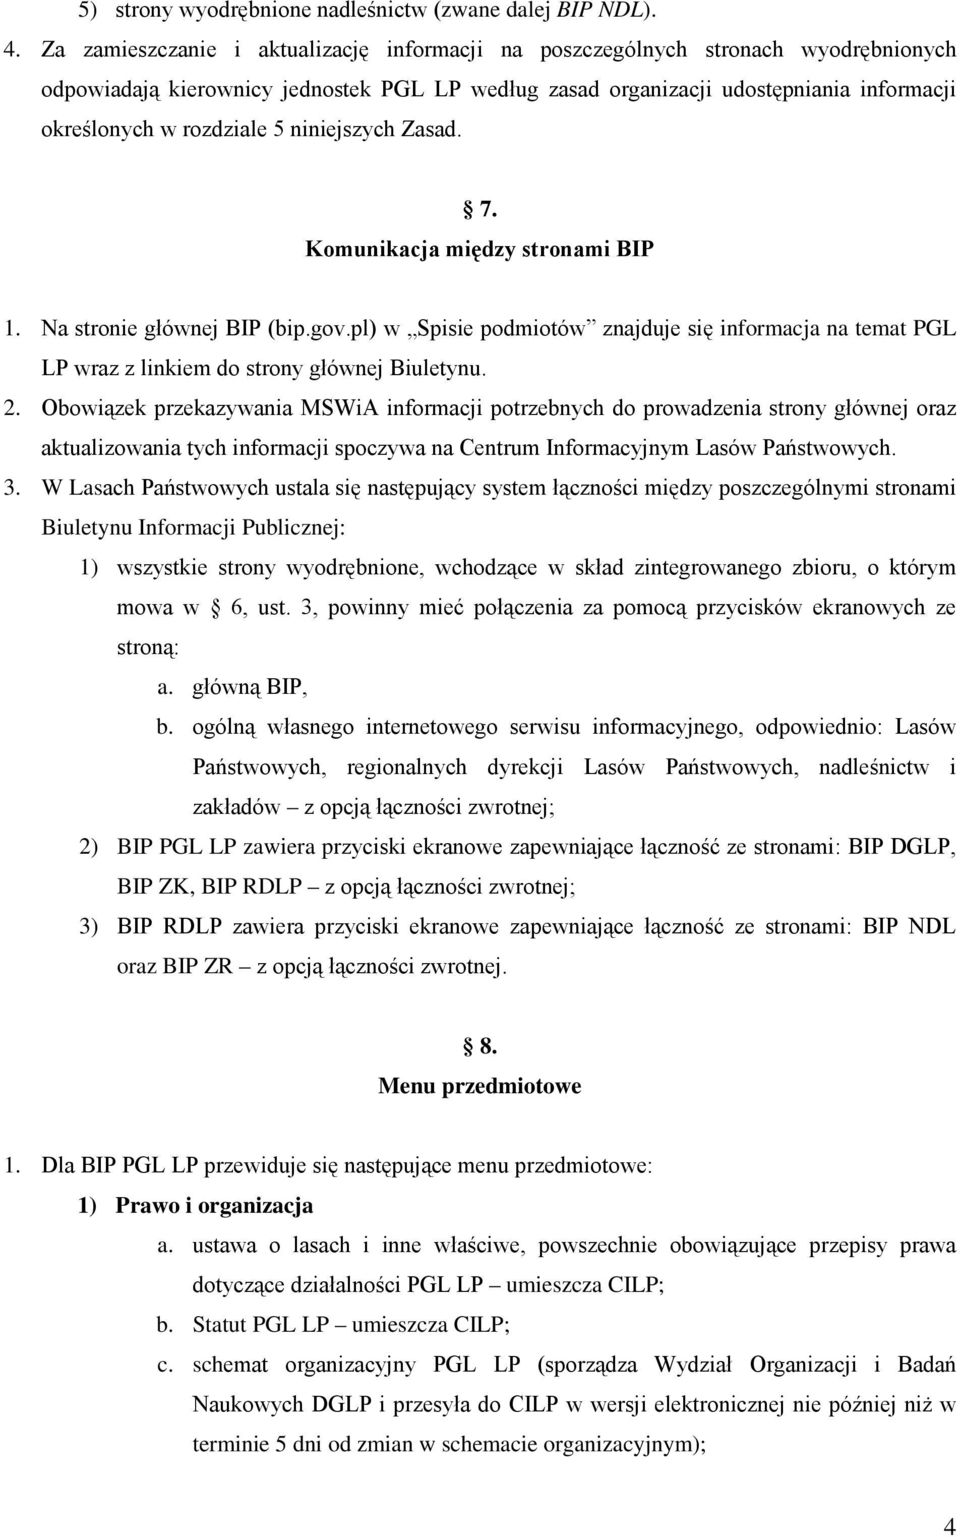 5 niniejszych Zasad. 7. Komunikacja między stronami BIP 1. Na stronie głównej BIP (bip.gov.pl) w Spisie podmiotów znajduje się informacja na temat PGL LP wraz z linkiem do strony głównej Biuletynu. 2.